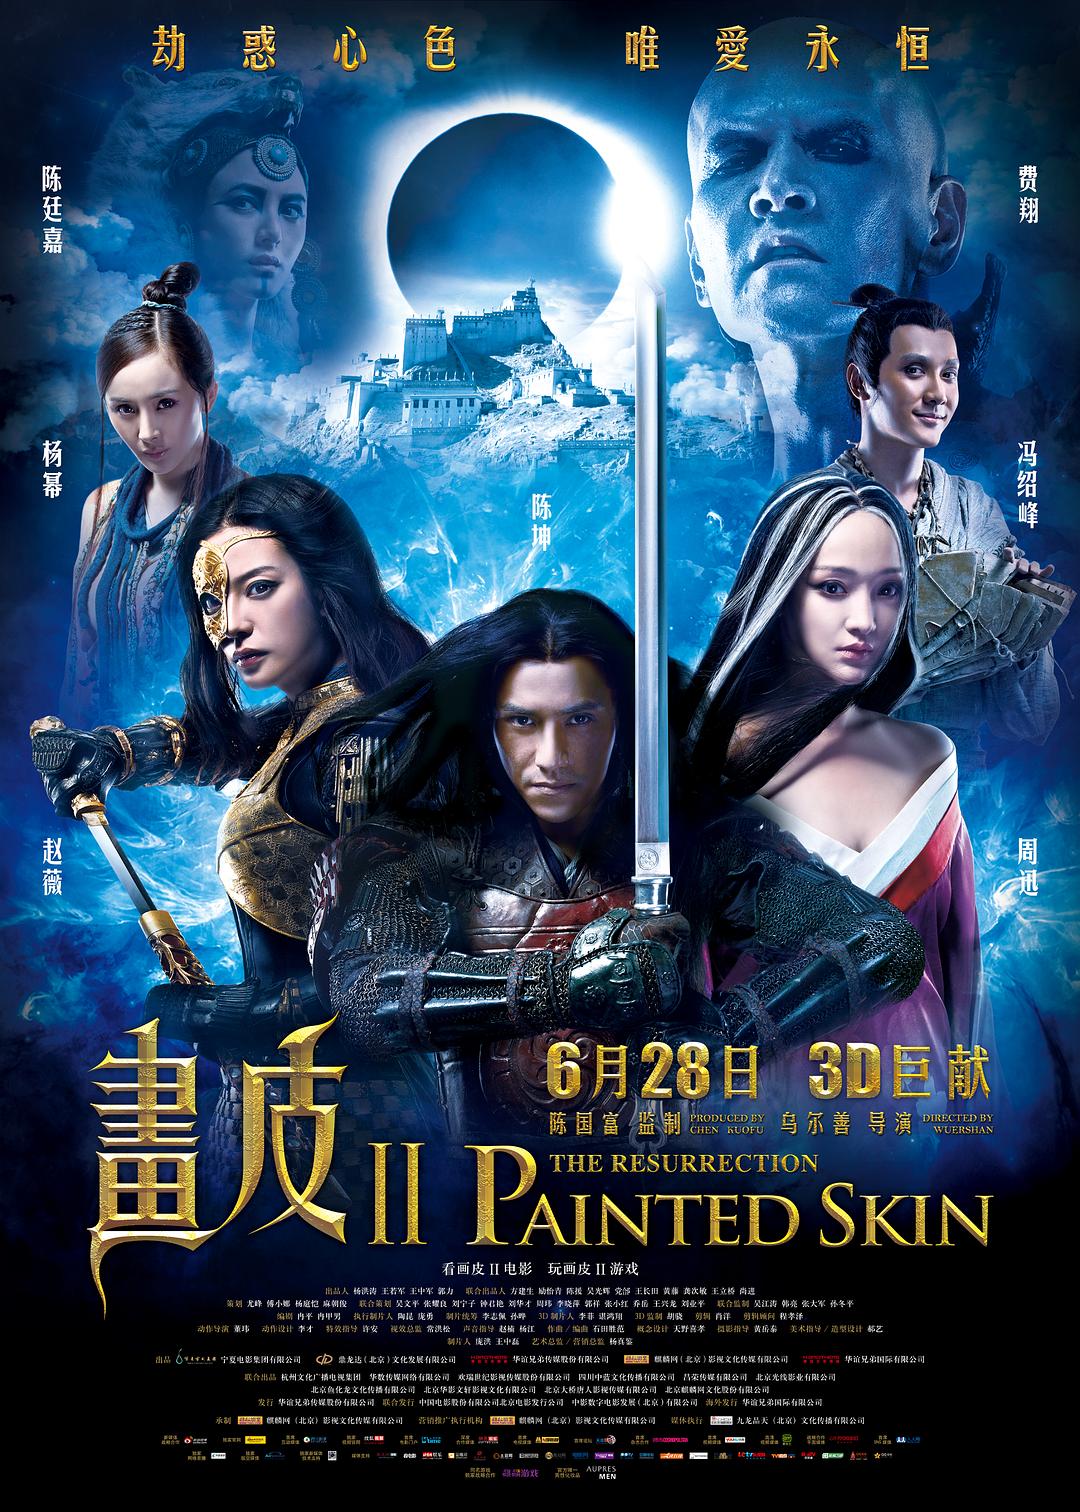 画皮2 [港版原盘 国粤双语 中笔墨幕].Painted.Skin.The.Resurrection.2012.HK.Blu-ray.1080p.AVC.TrueHD.5.1-TAG 45.39GB-1.jpg